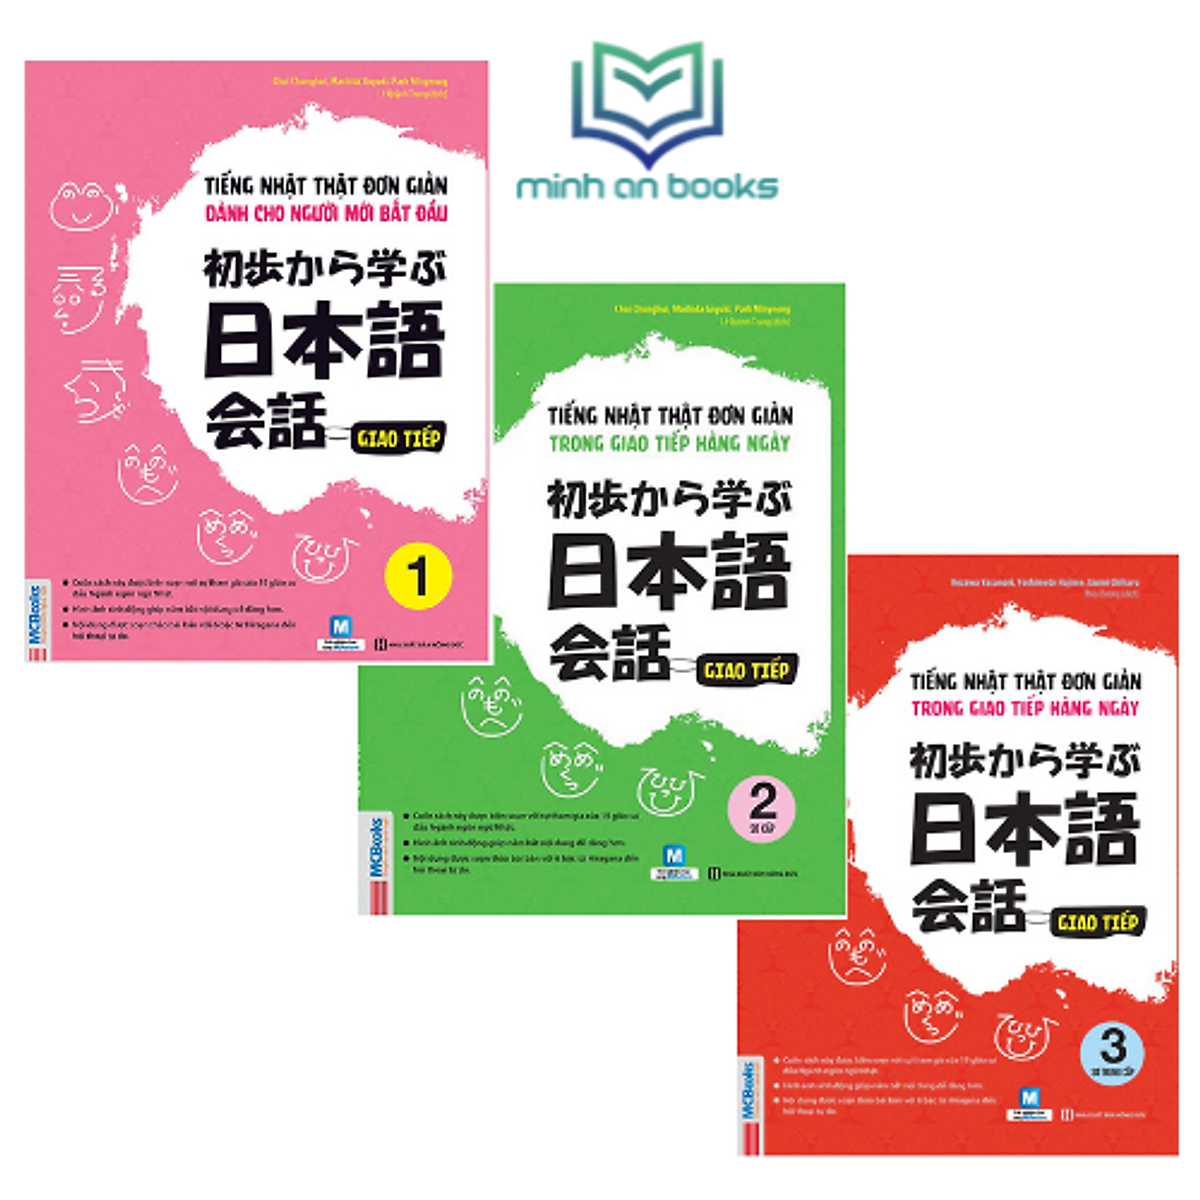 Combo Trọn Bộ 3 Cuốn Tiếng Nhật Thật Đơn Giản Dành Cho Người Mới Bắt Đầu: Giao Tiếp 1 + Giao Tiếp Sơ Cấp 2 + Giao Tiếp Sơ Trung Cấp 3 (Học Cùng App MCBooks) – MinhAnBooks